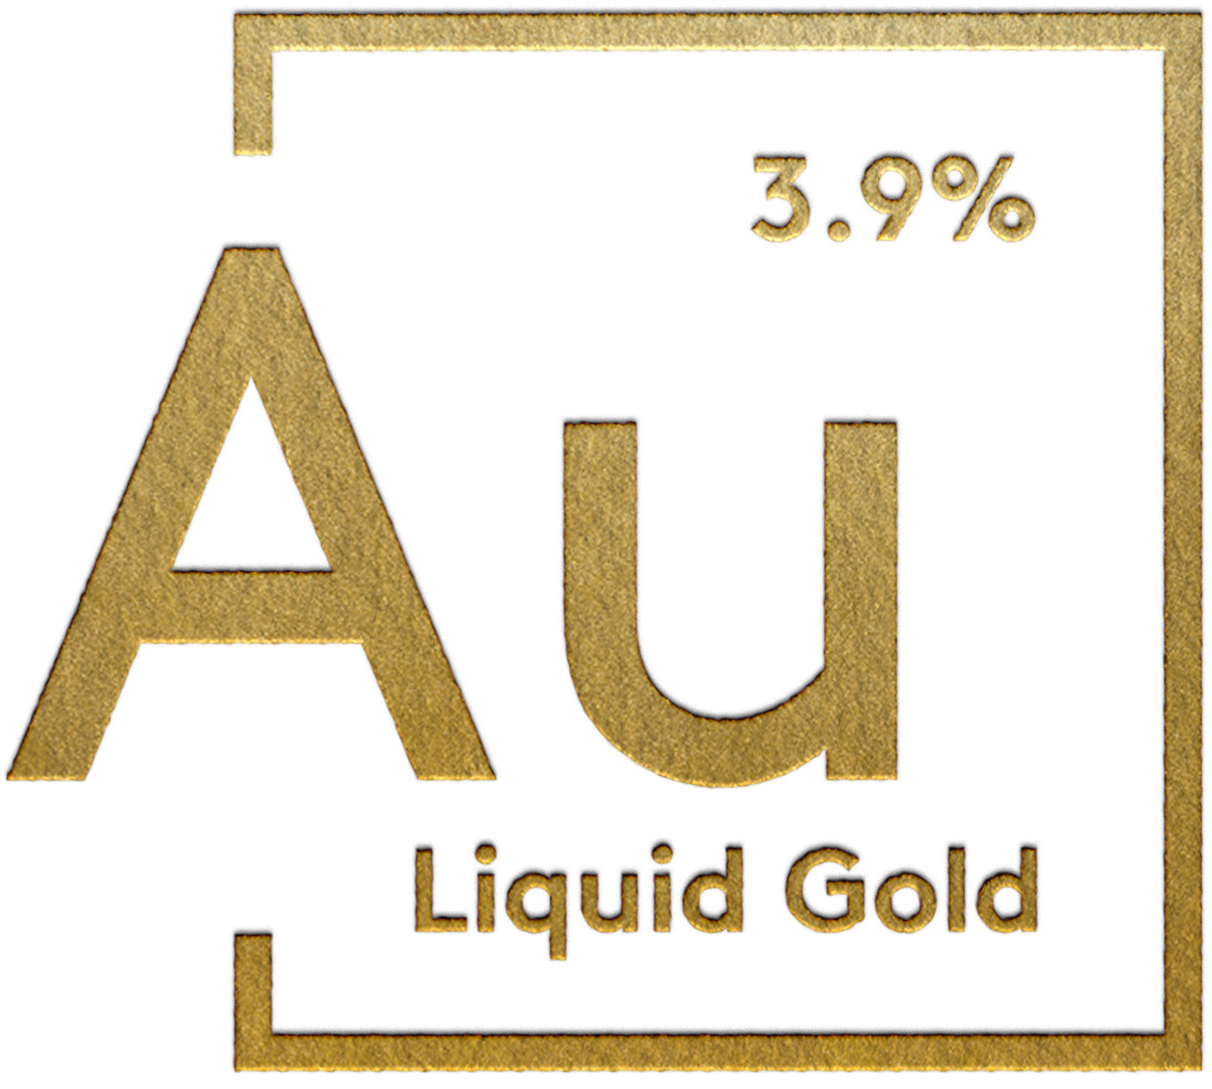 Au Liquid Gold